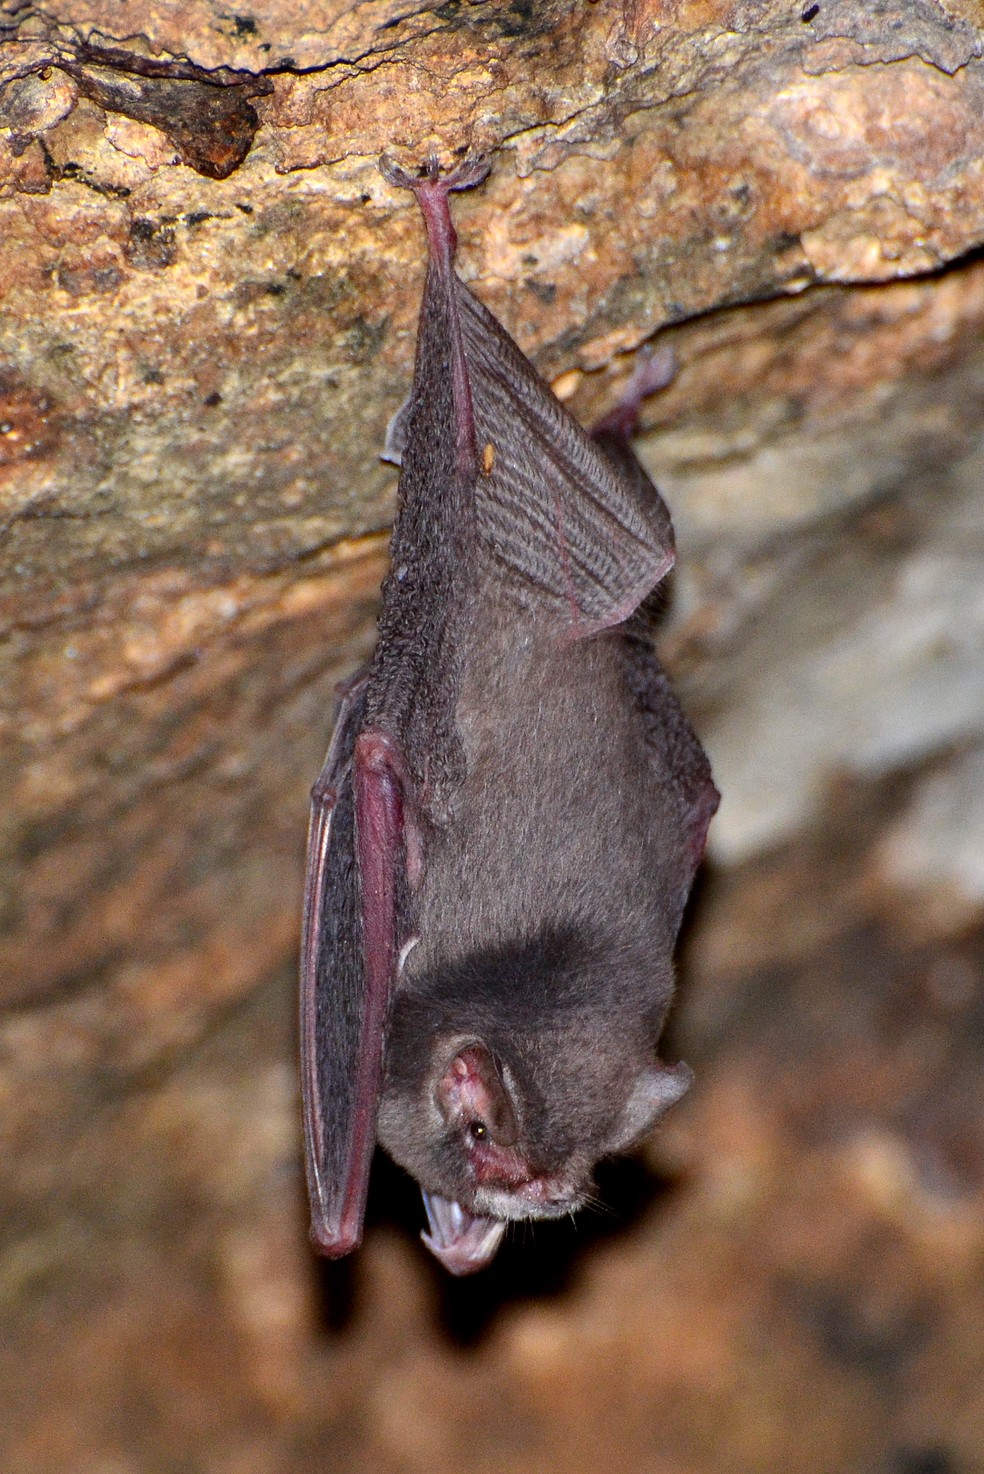 Morcego mede cerca de quatro centímetros, com o antebraço de 3,5 centímetros. — Foto: Juan Carlos Mena